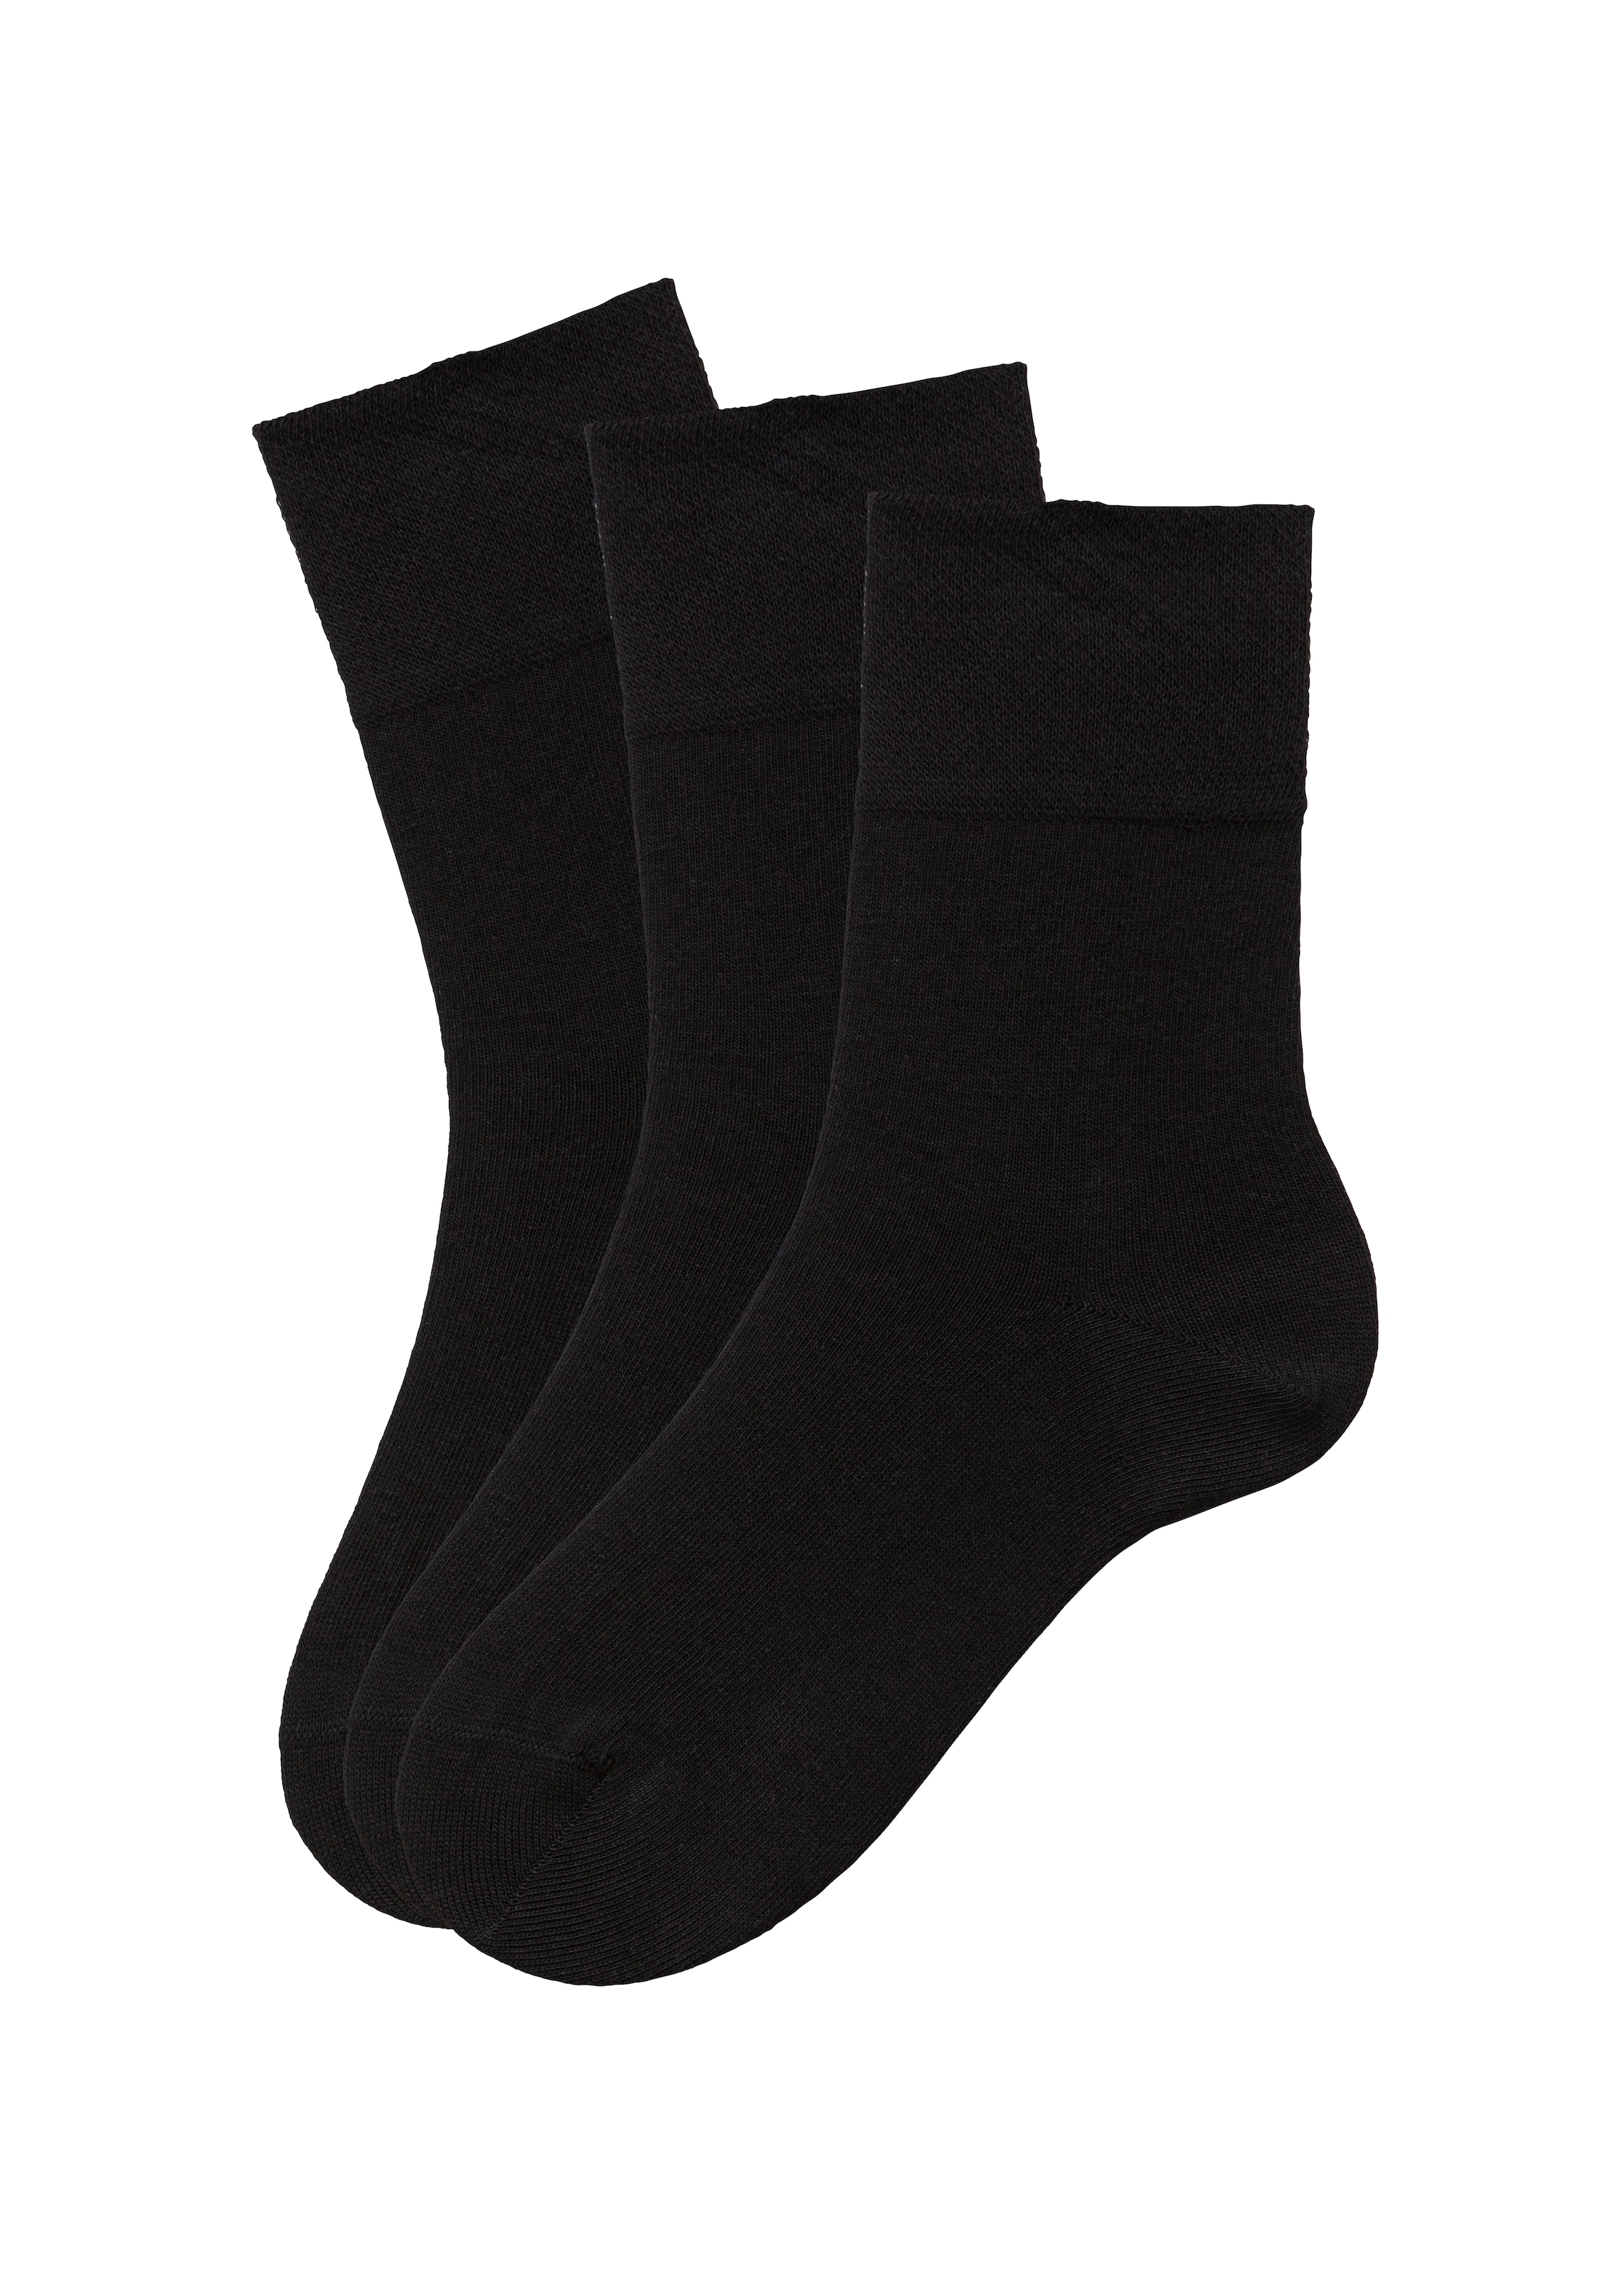 Socken, (Set, 3 Paar), mit Komfortbund auch für Diabetiker geeignet